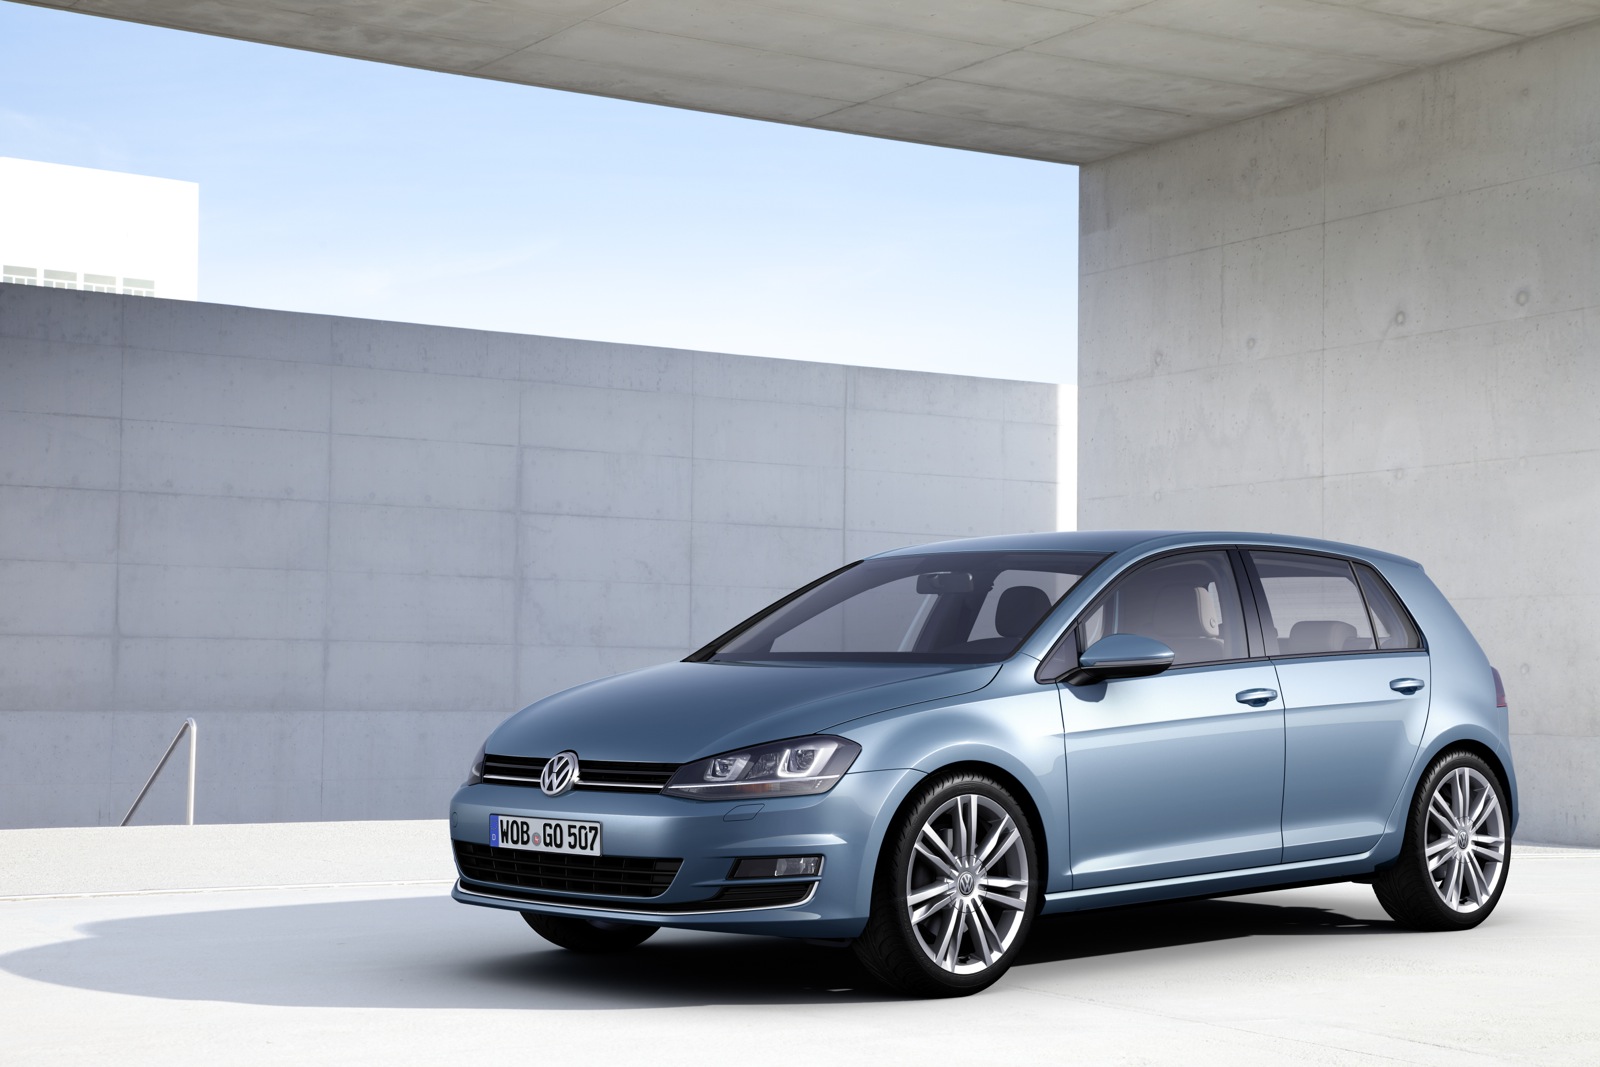 2014 Volkswagen Golf Preview: Lighter, Larger, More Efficient